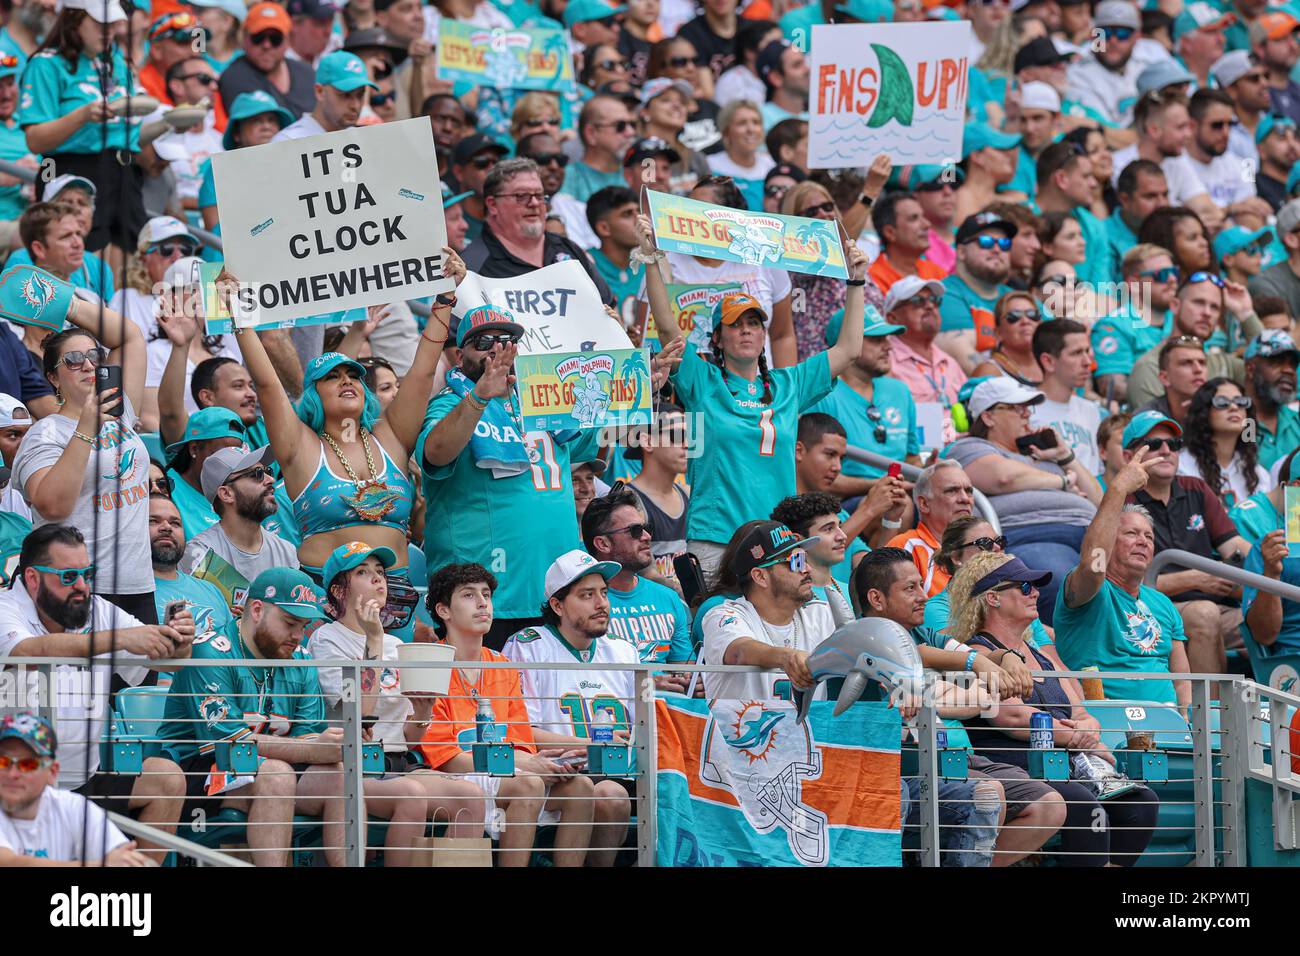 Miami. FL USA; i fan dei Miami Dolphins fanno il tifo per la loro squadra durante una partita della NFL contro gli Houston Texans all'Hard Rock Stadium, domenica 27 novembre. Foto Stock